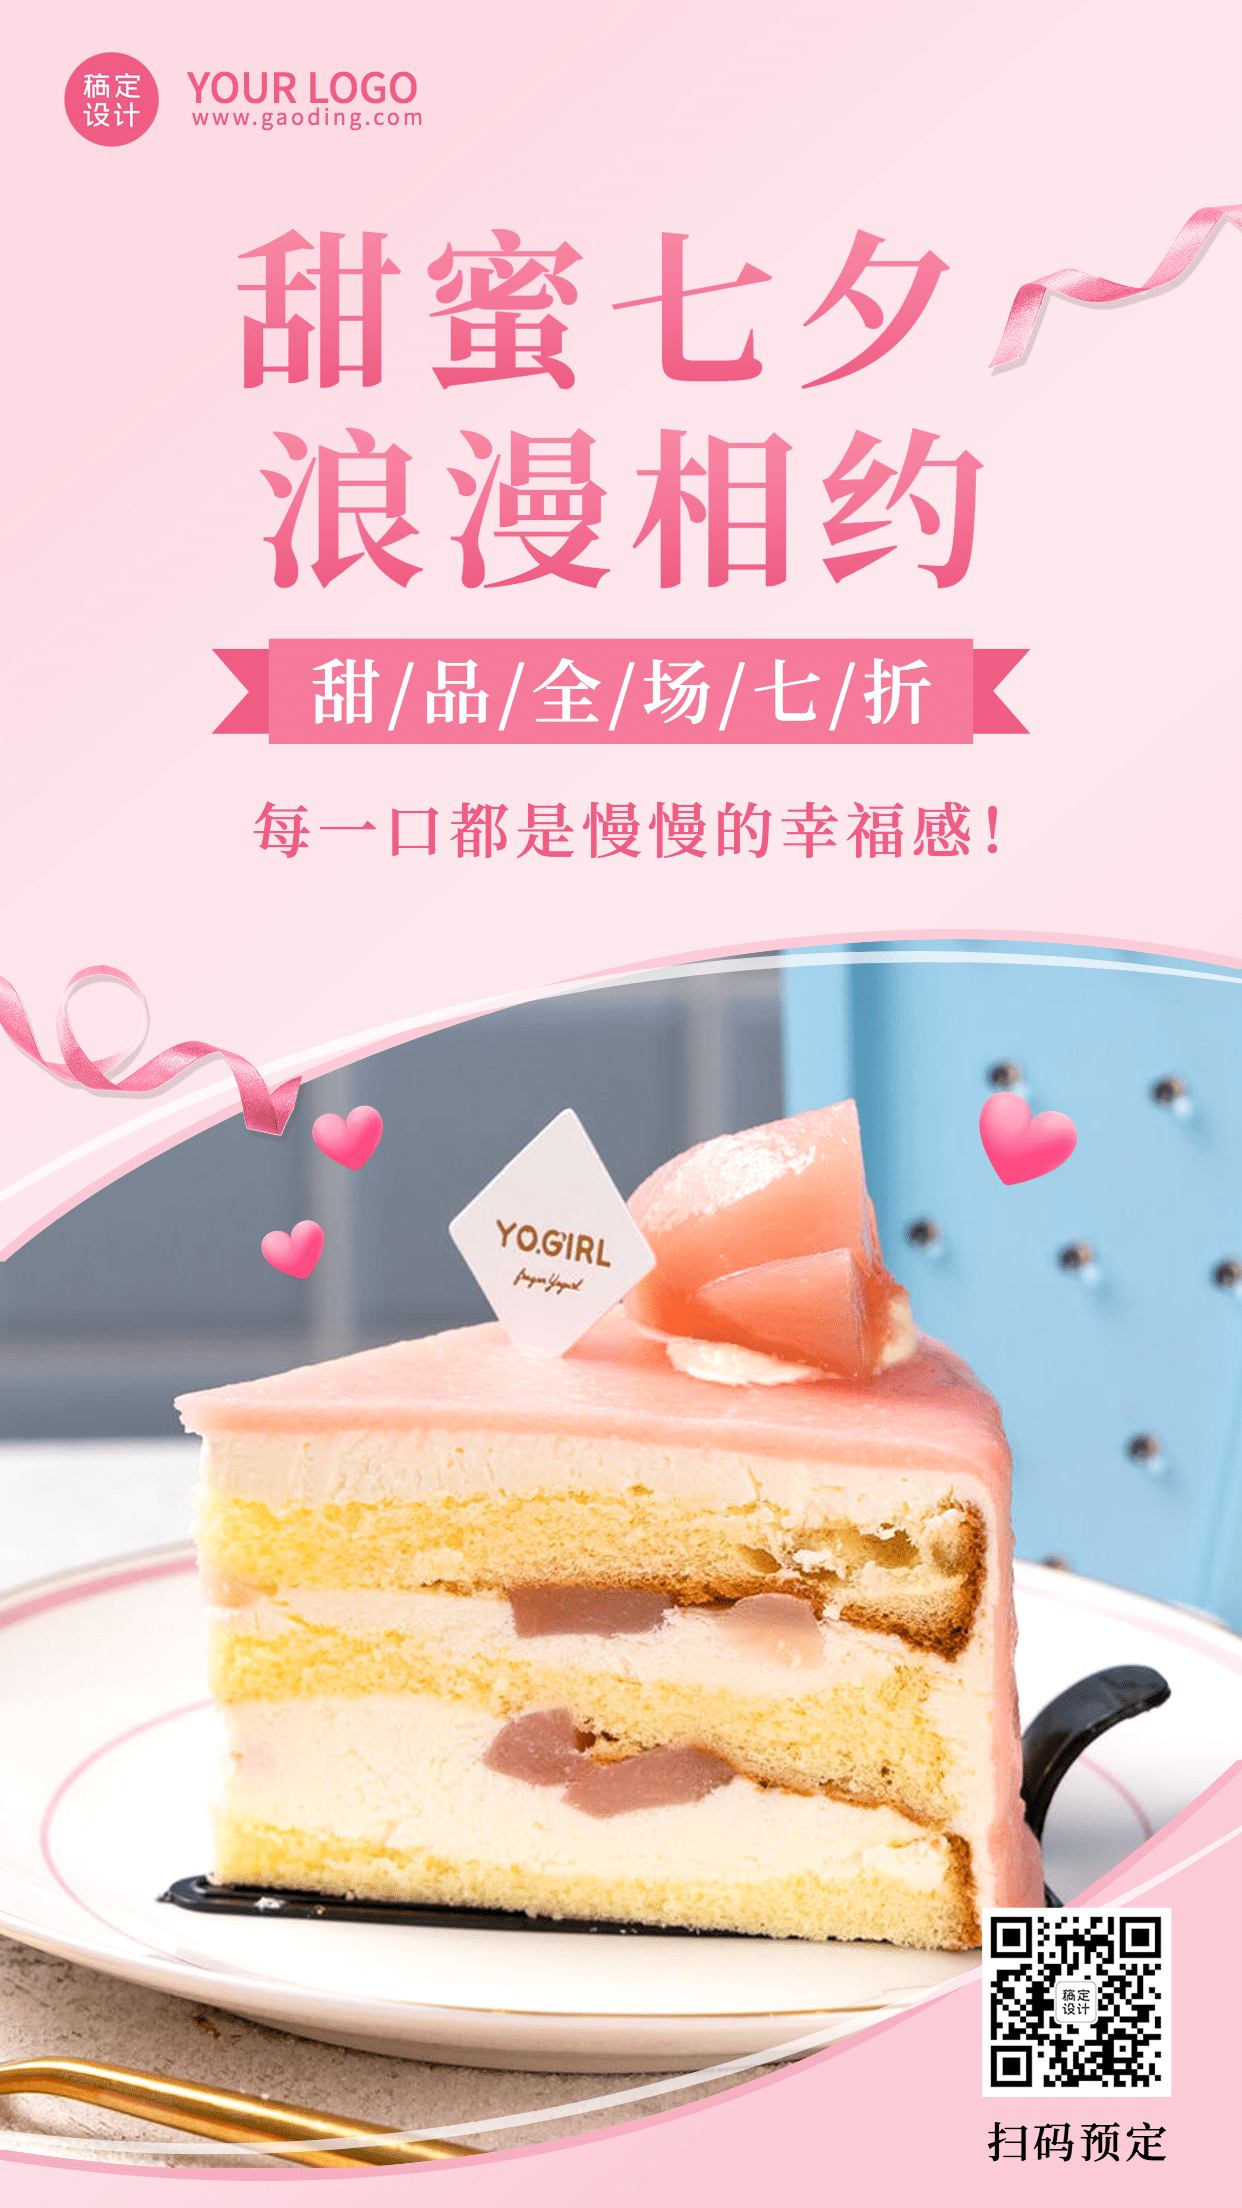 可爱七夕营销产品展示蛋糕预览效果